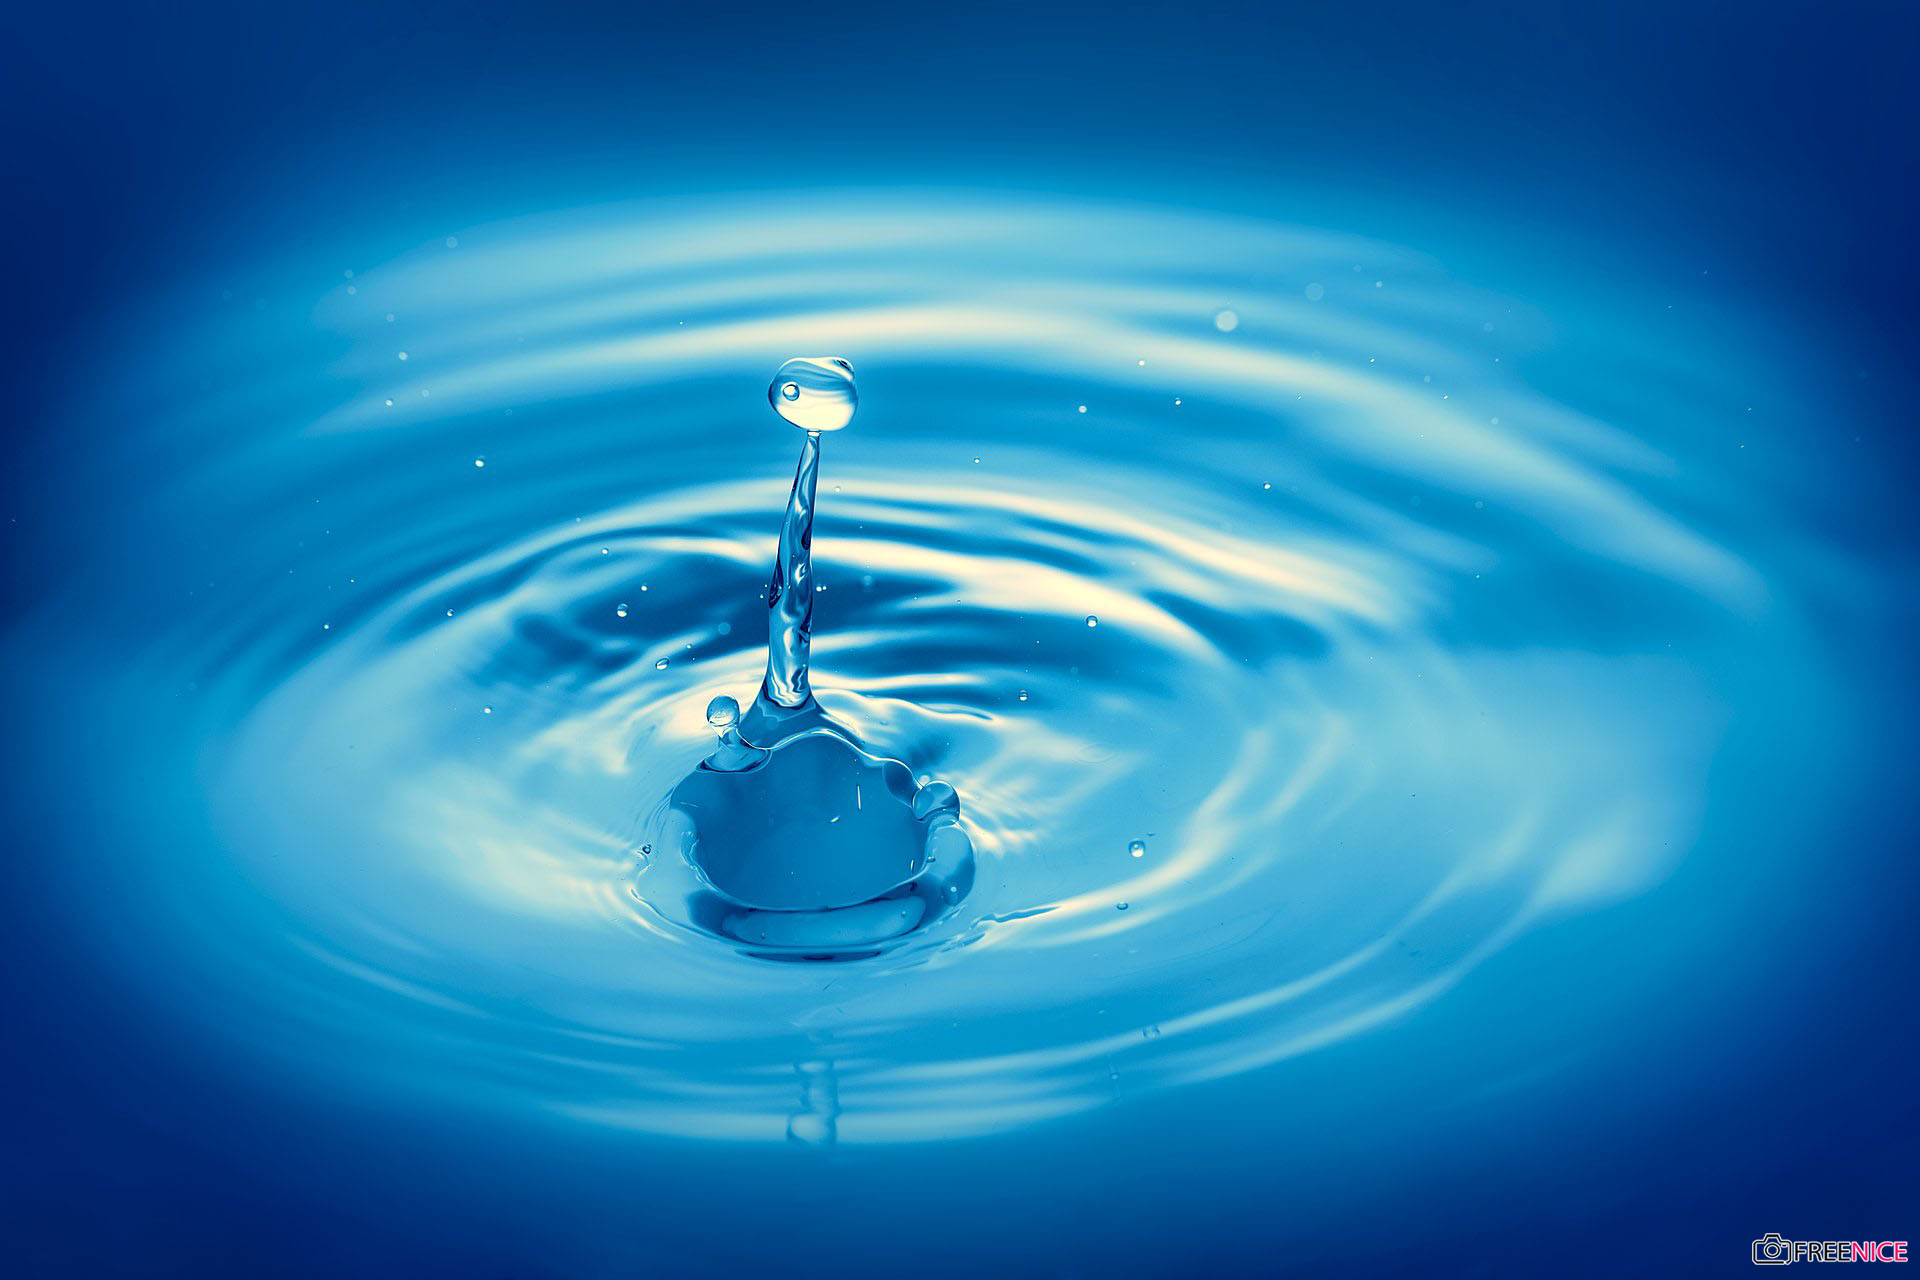 80 Giọt Nước Trên Lá  ảnh Thiên Nhiên miễn phí  Pixabay